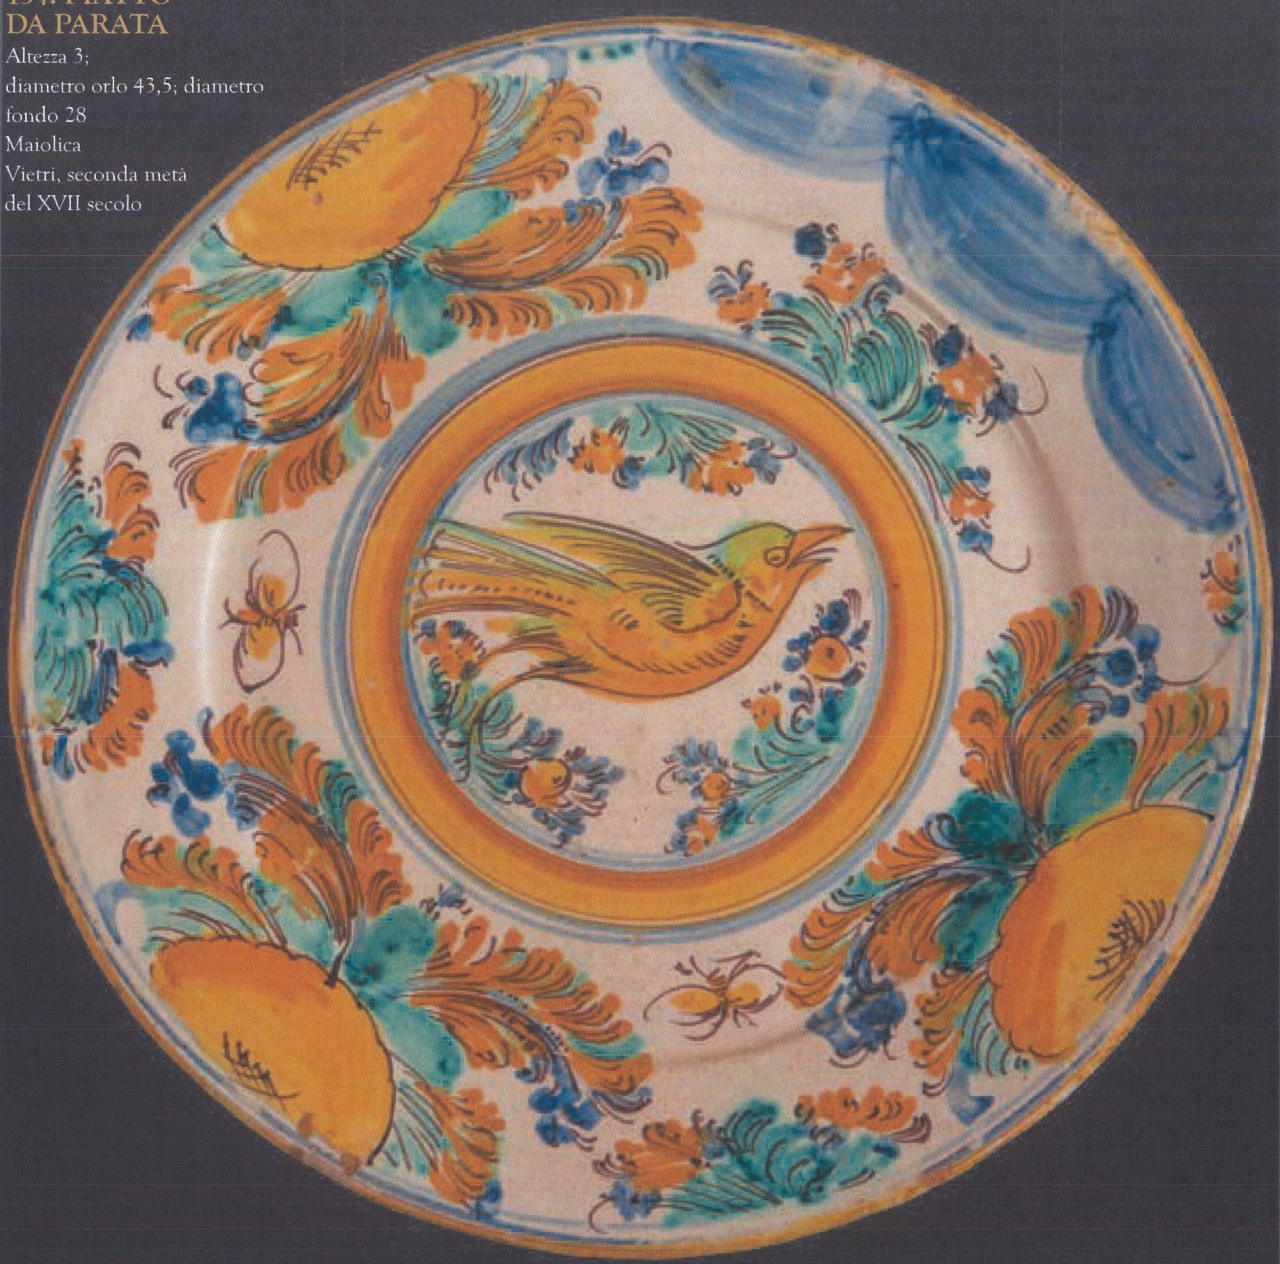 uccello con motivi decorativi vegetali (piatto da parata, opera isolata) - bottega di Vietri (seconda metà XVII)